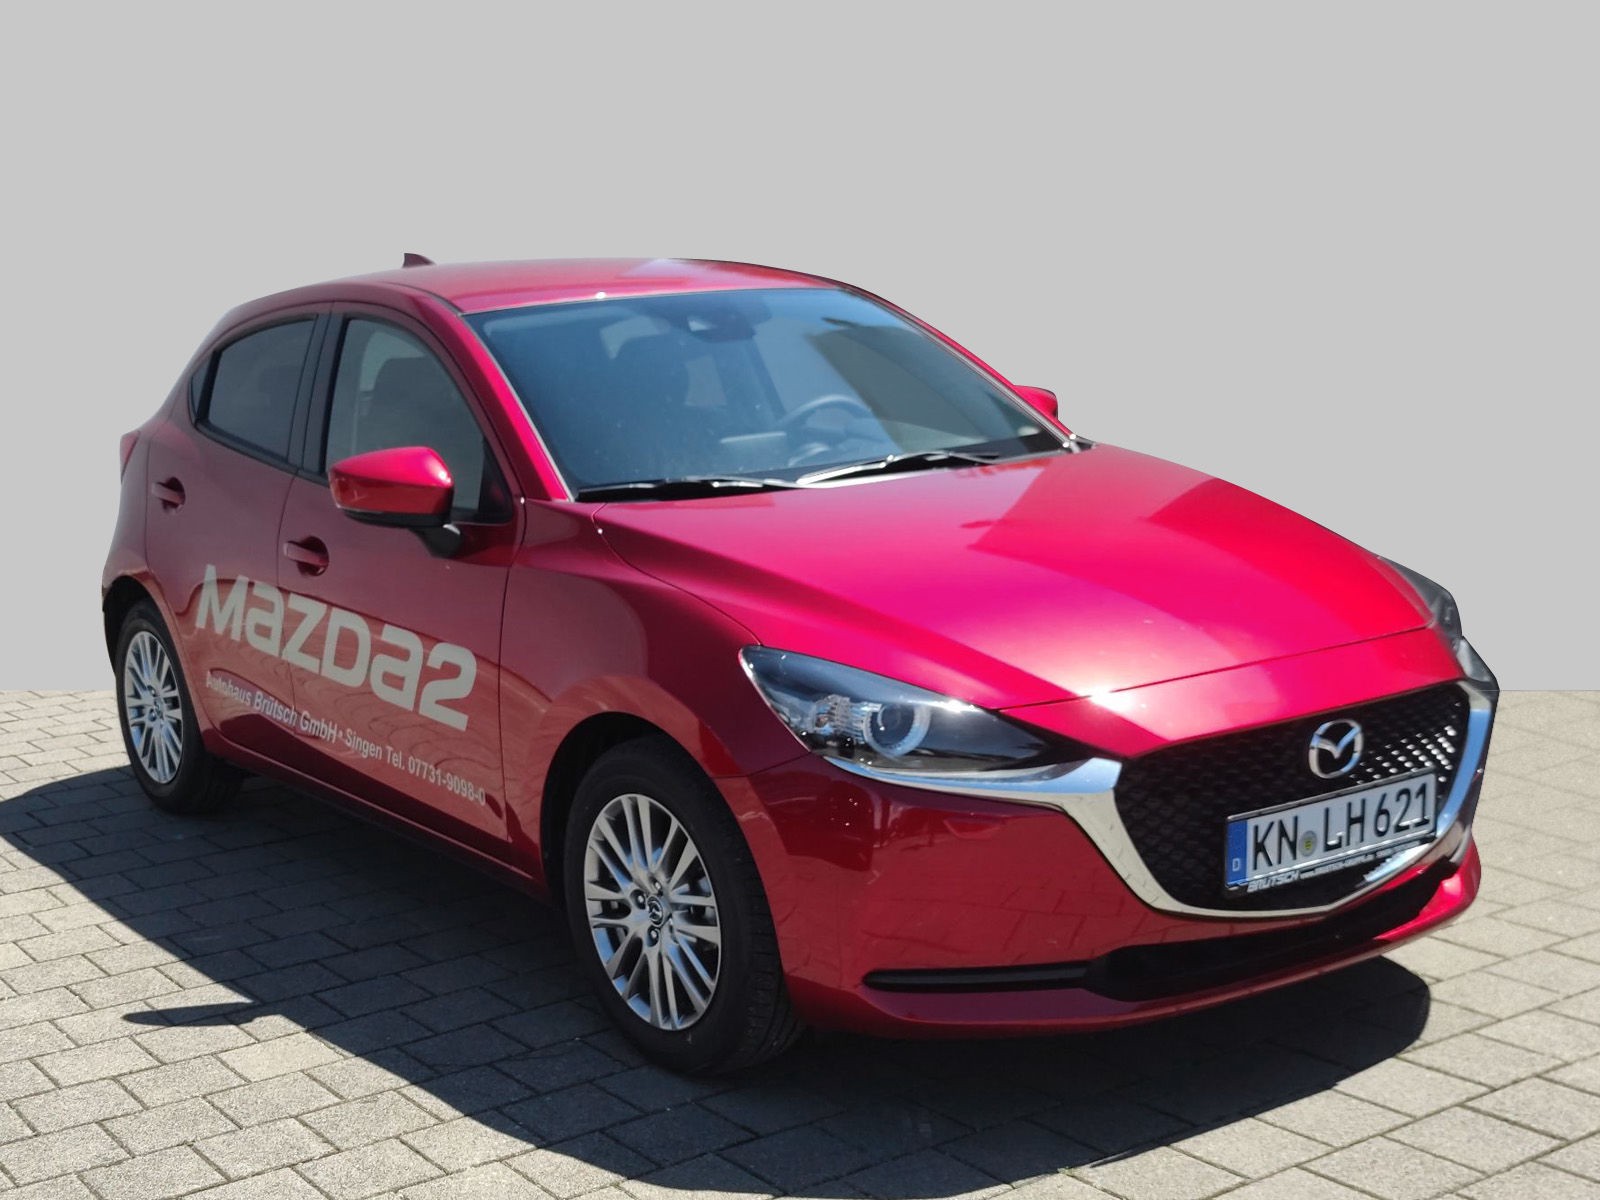 Mazda 2 Benzin 00 Skyactiv G 90 6gs Kizoku Tou P Nav Vorfuhrfahrzeug Kaufen In Singen Preis Eur Int Nr Si 730 Verkauft